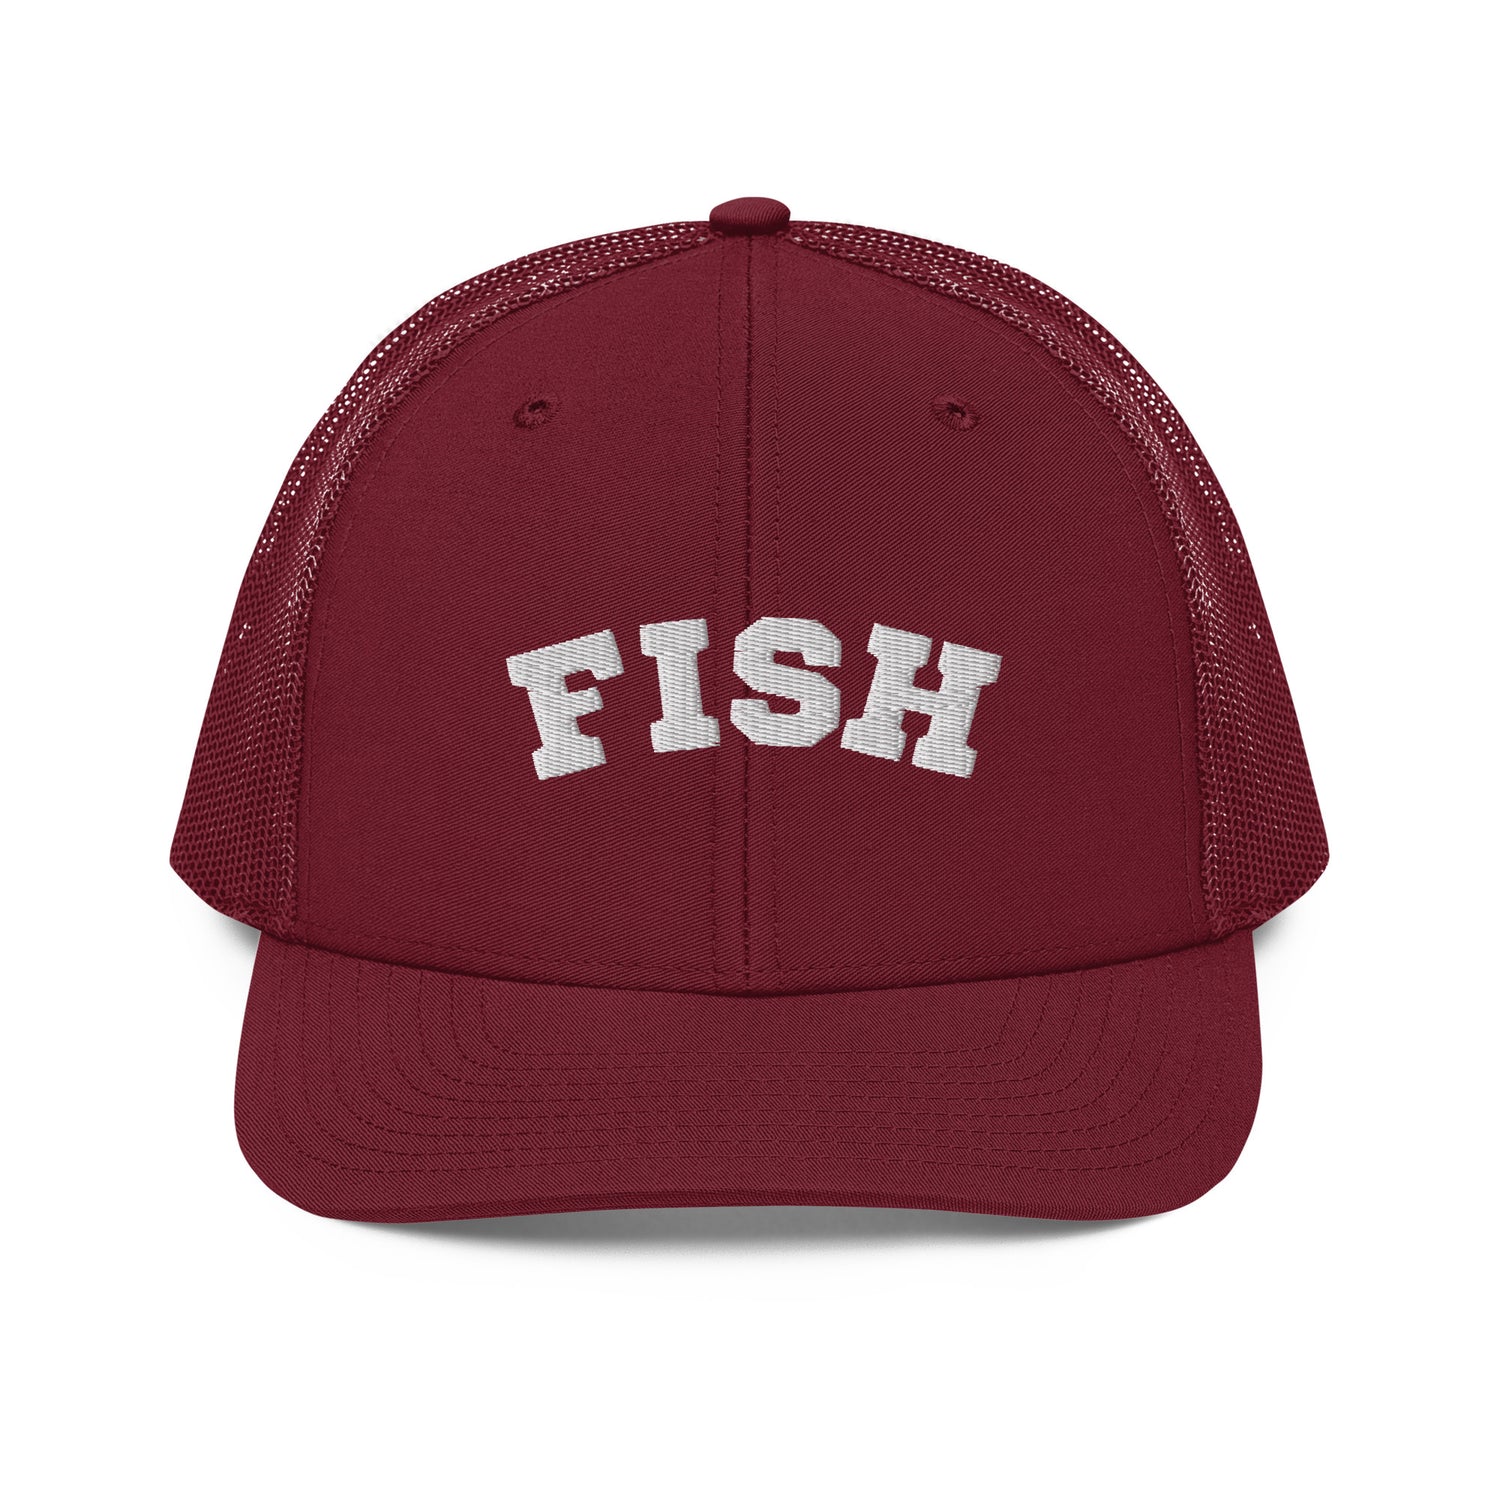 Fish Trucker Cap – University of Whitefish